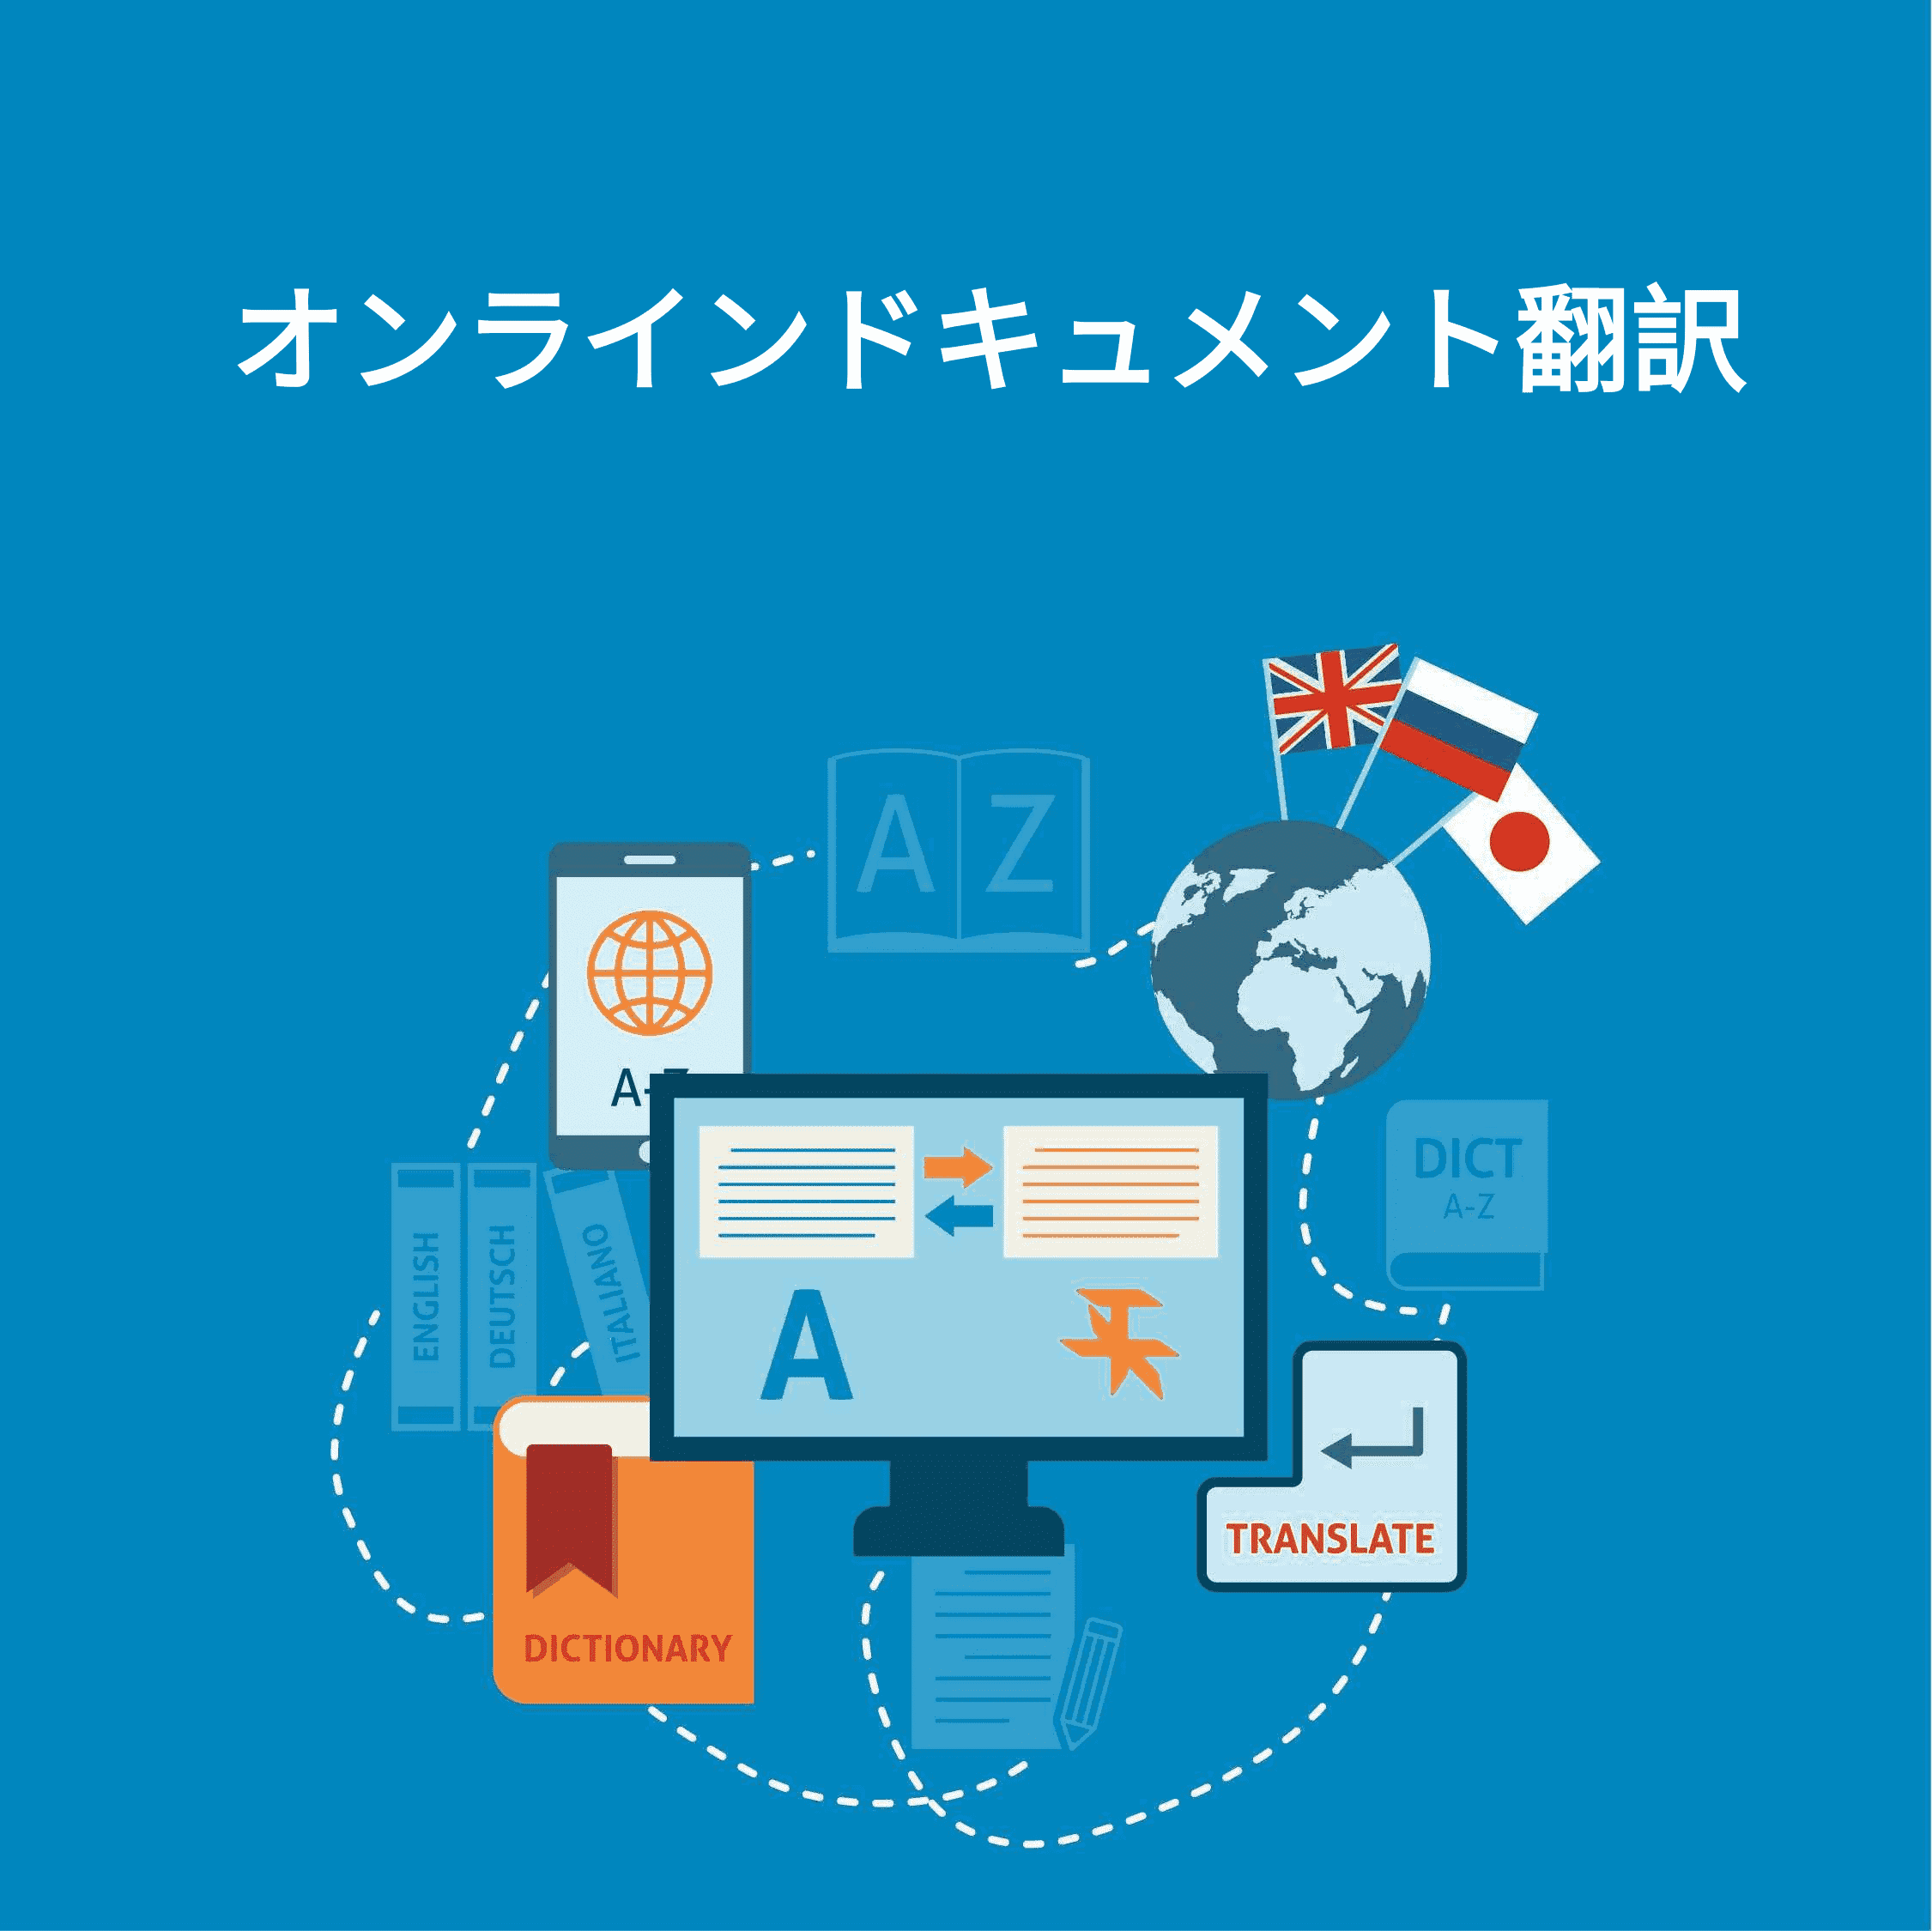 この画像は、オンライン文書翻訳ツールがあなたの文書を翻訳するためにどのように動作するかのアイデアを与える.